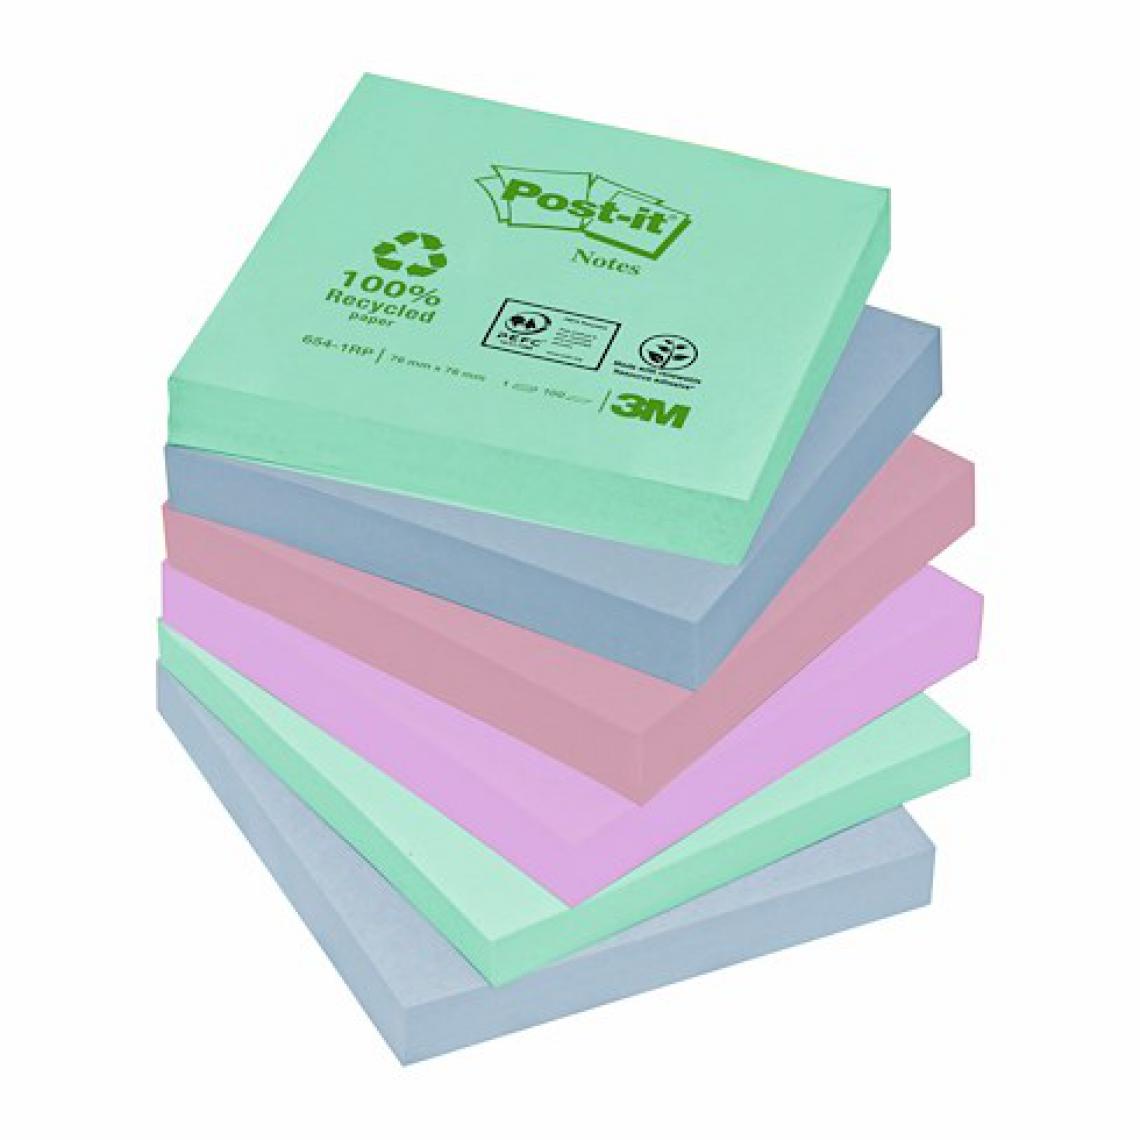 Post-It - Notes repositionnables couleurs recyclées Post-It 76 x 76 mm - bloc de 100 feuilles - Lot de 16 - Accessoires Bureau